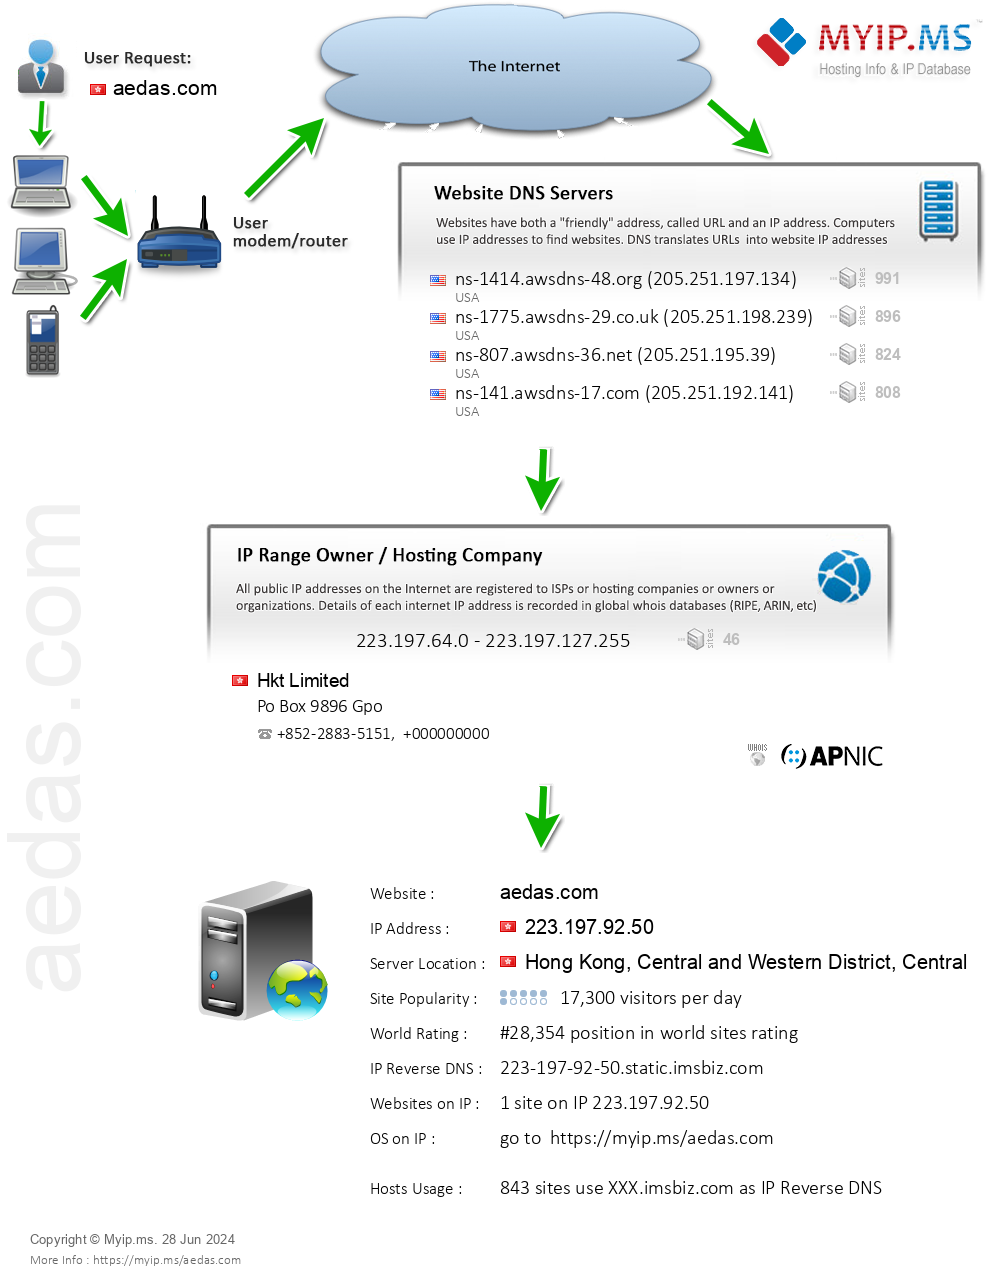 Aedas.com - Website Hosting Visual IP Diagram